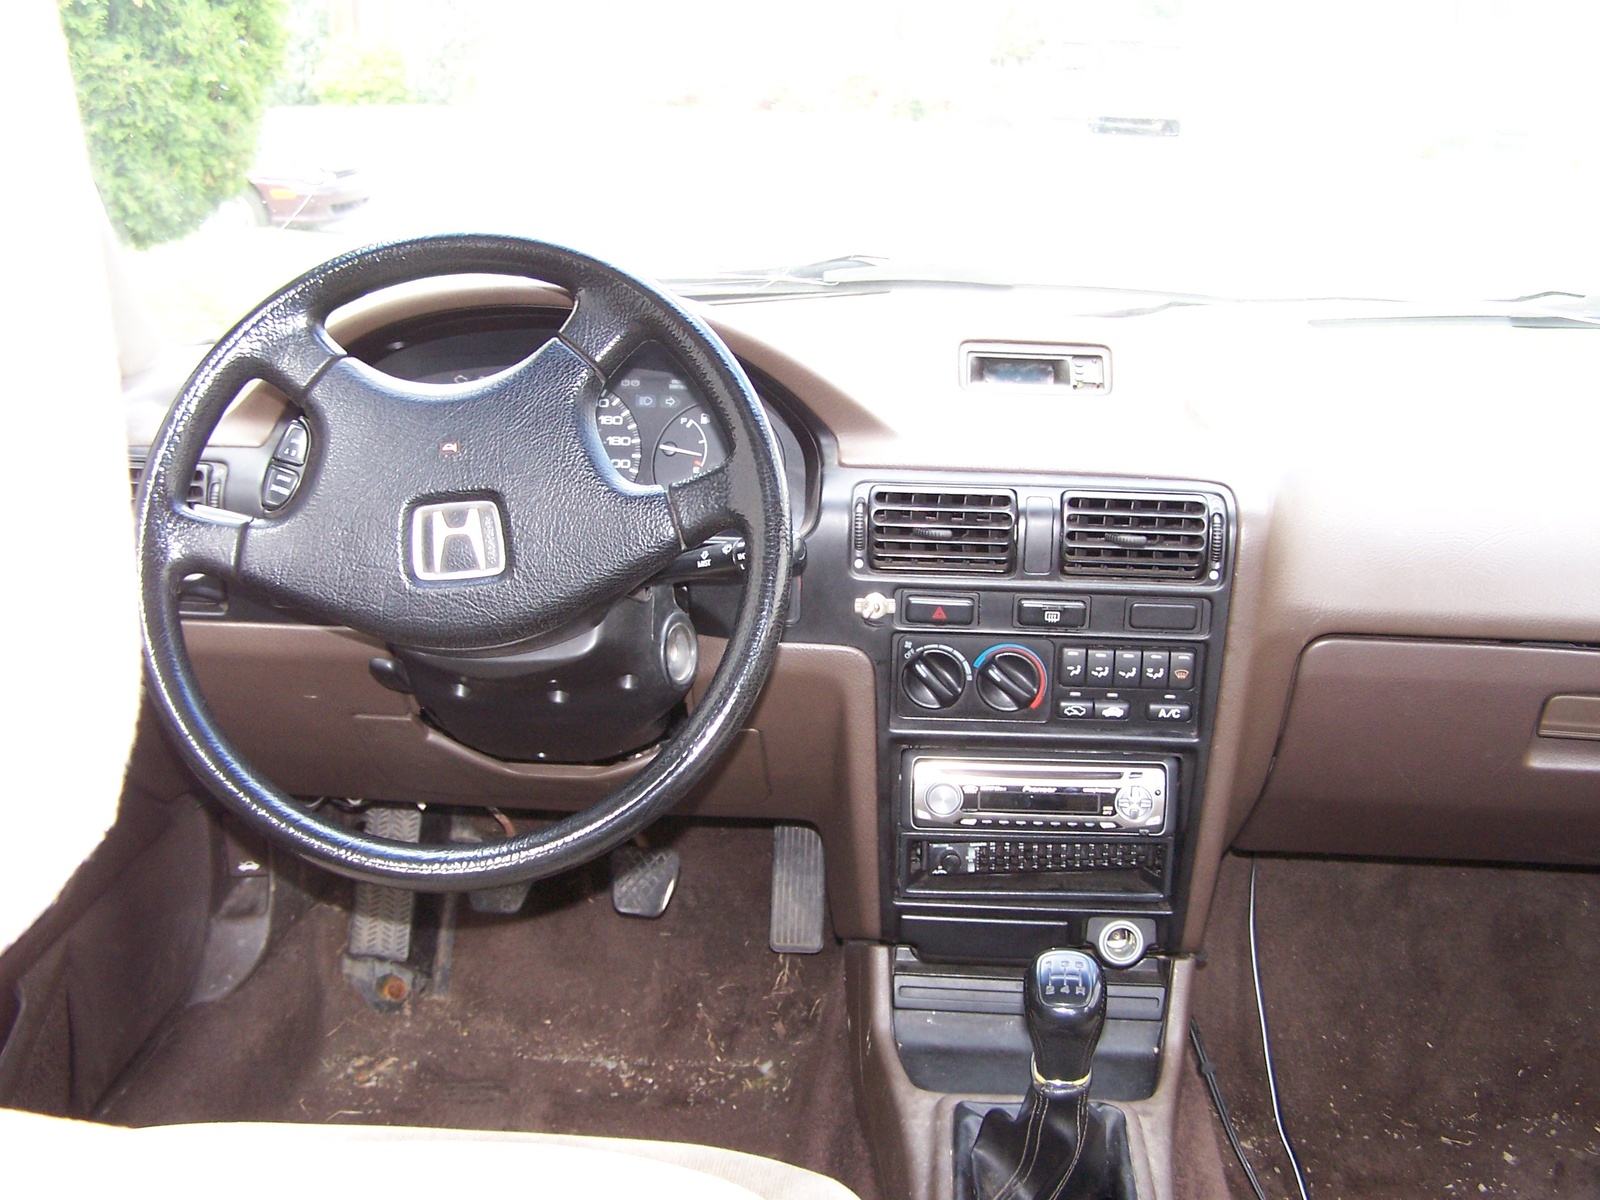 1990 Honda accord ex interior #3